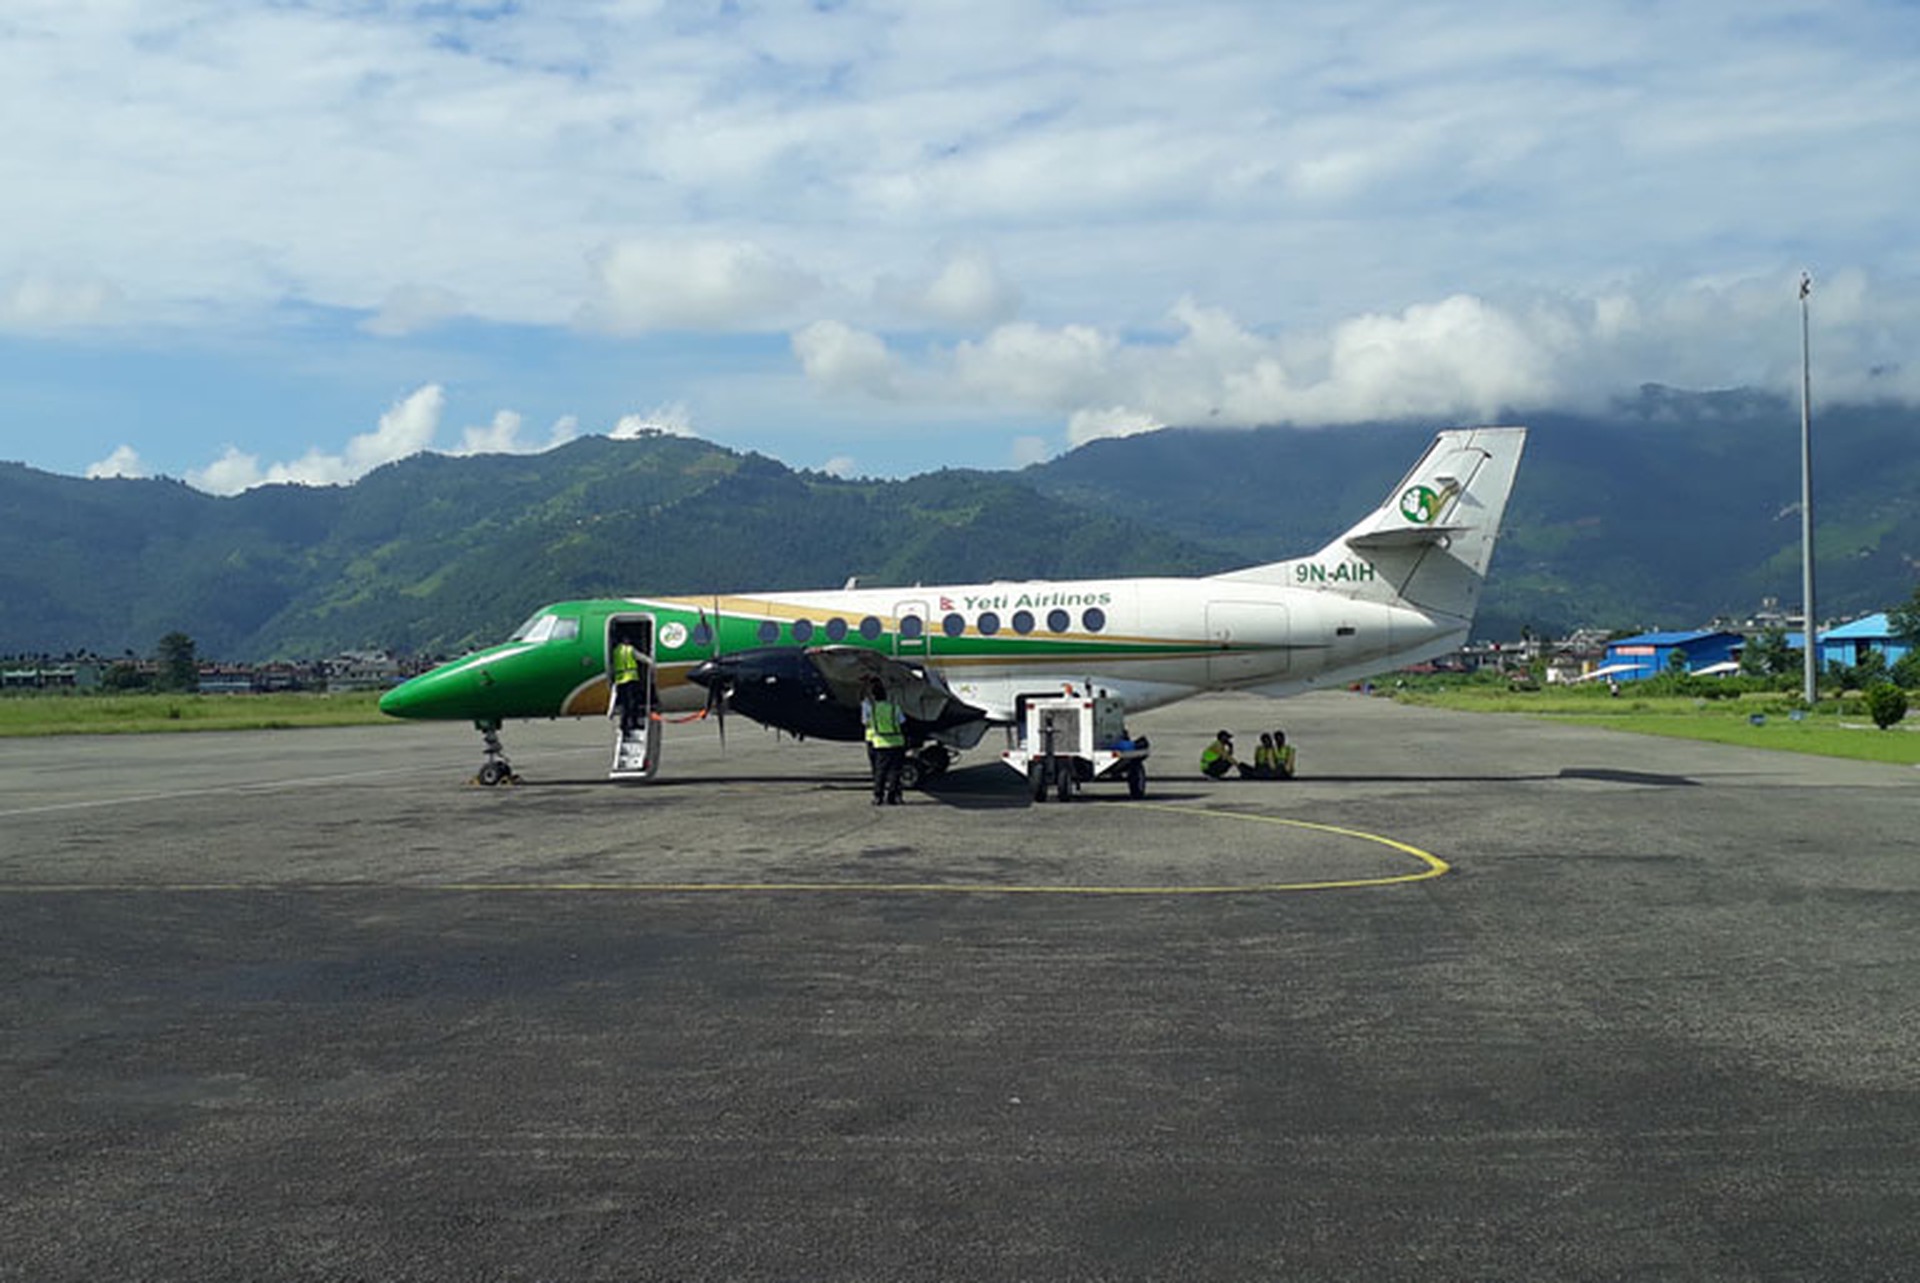 СМИ: Все пассажиры и члены экипажа погибли при крушении самолёта в Непале